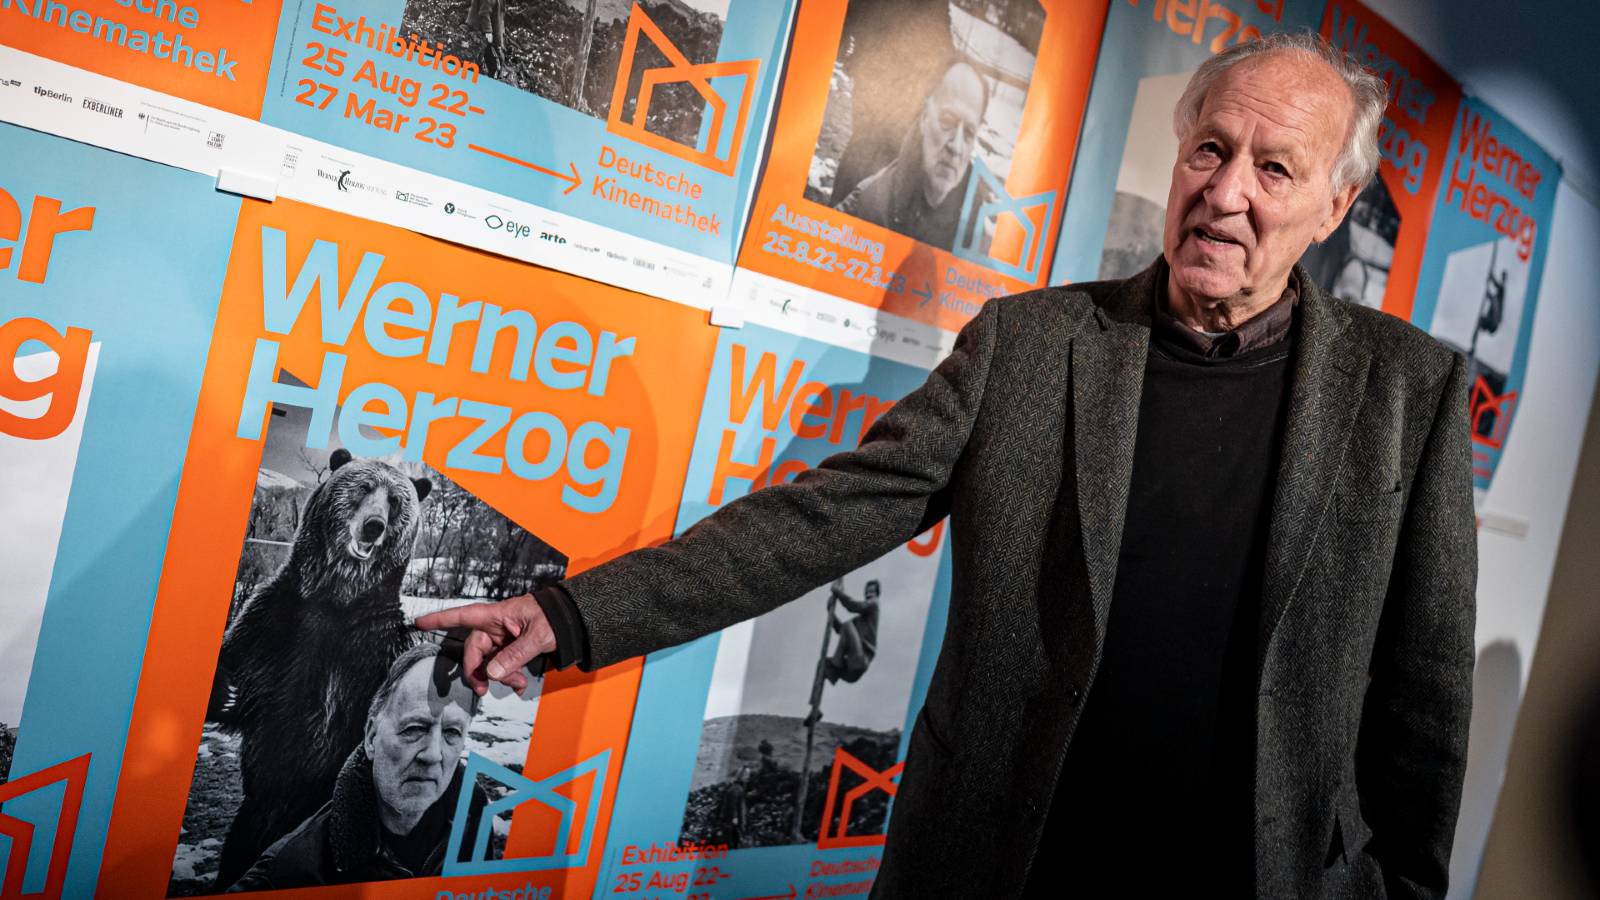 Werner Herzog calls many films junk